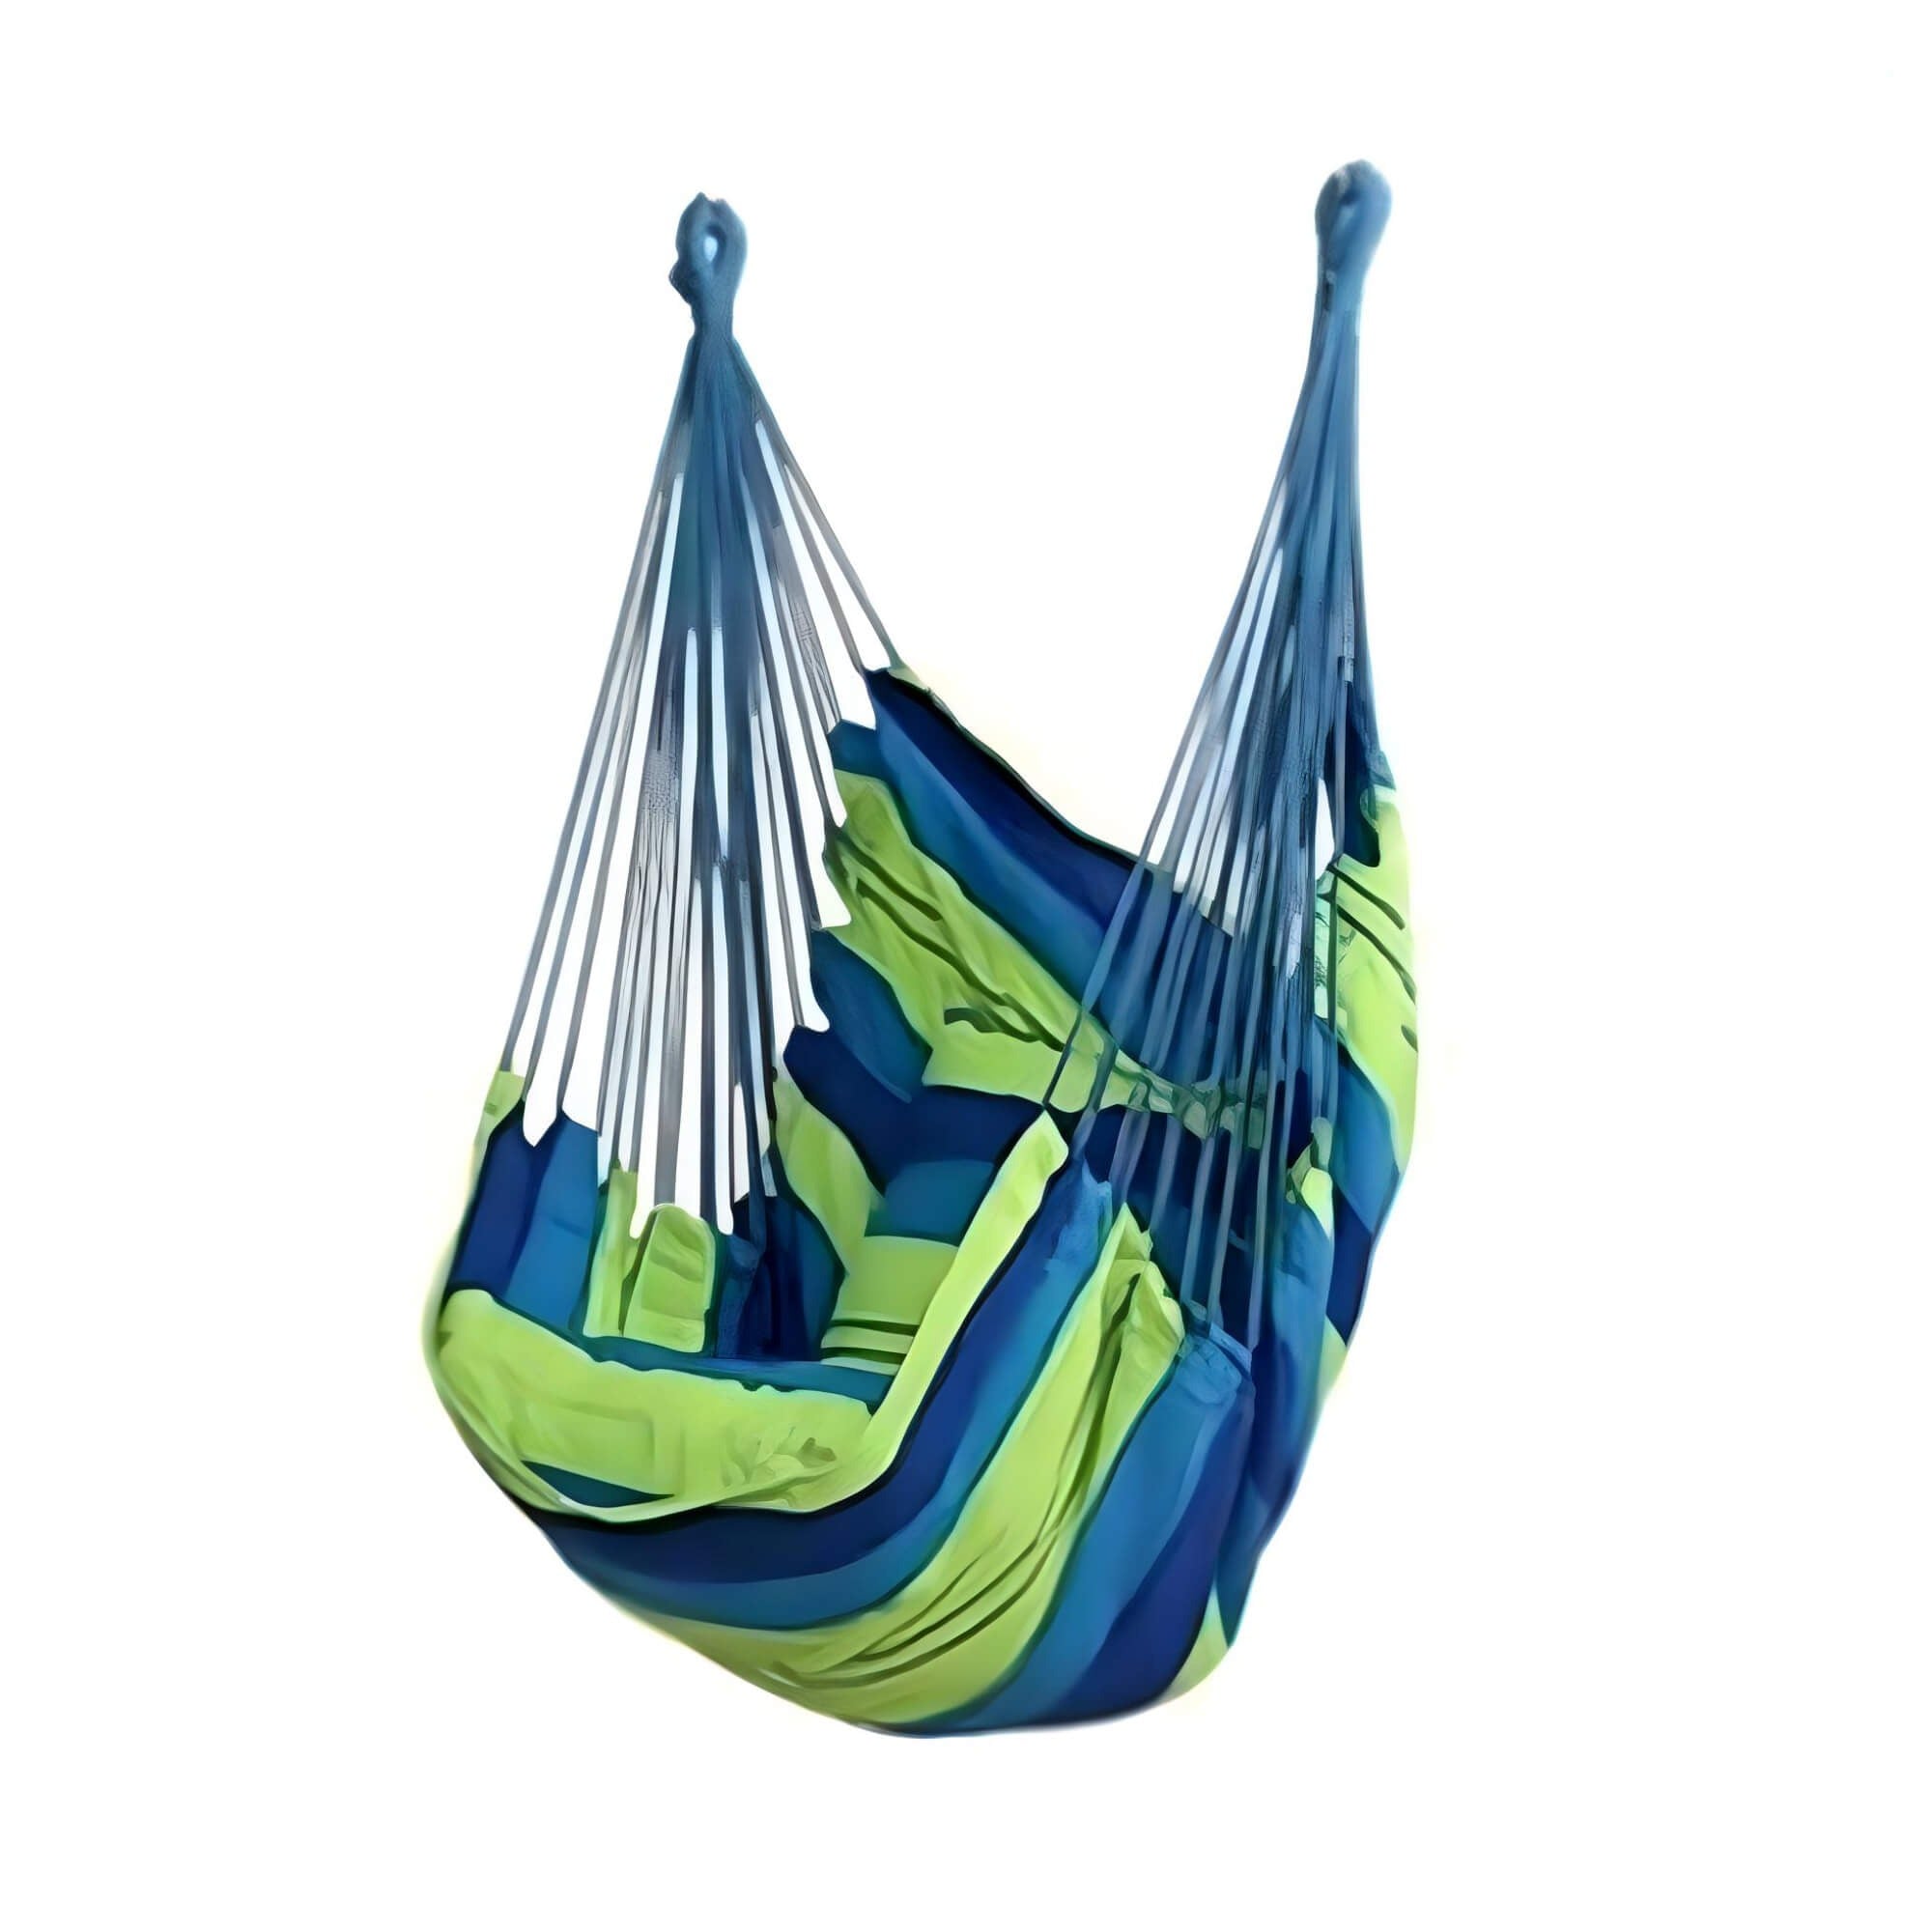    green-blue-color-air-chair-hammock